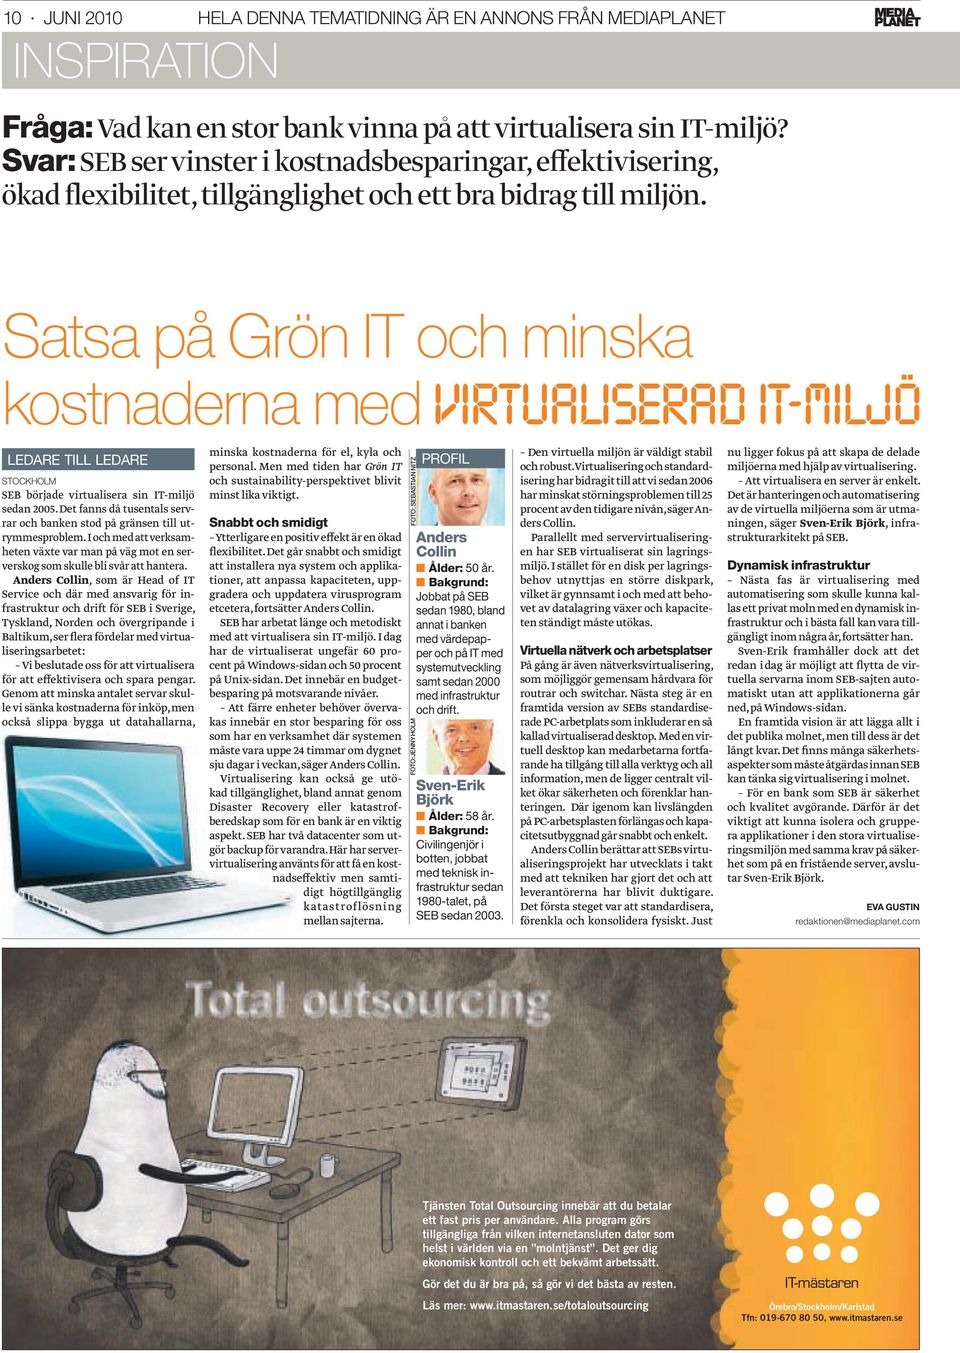 S atsa på Grön IT och minska kostnaderna med VIRTUALISERAD IT-MILJÖ LEDARE TILL LEDARE STOCKHOLM SEB började virtualisera sin IT-miljö sedan 2005.